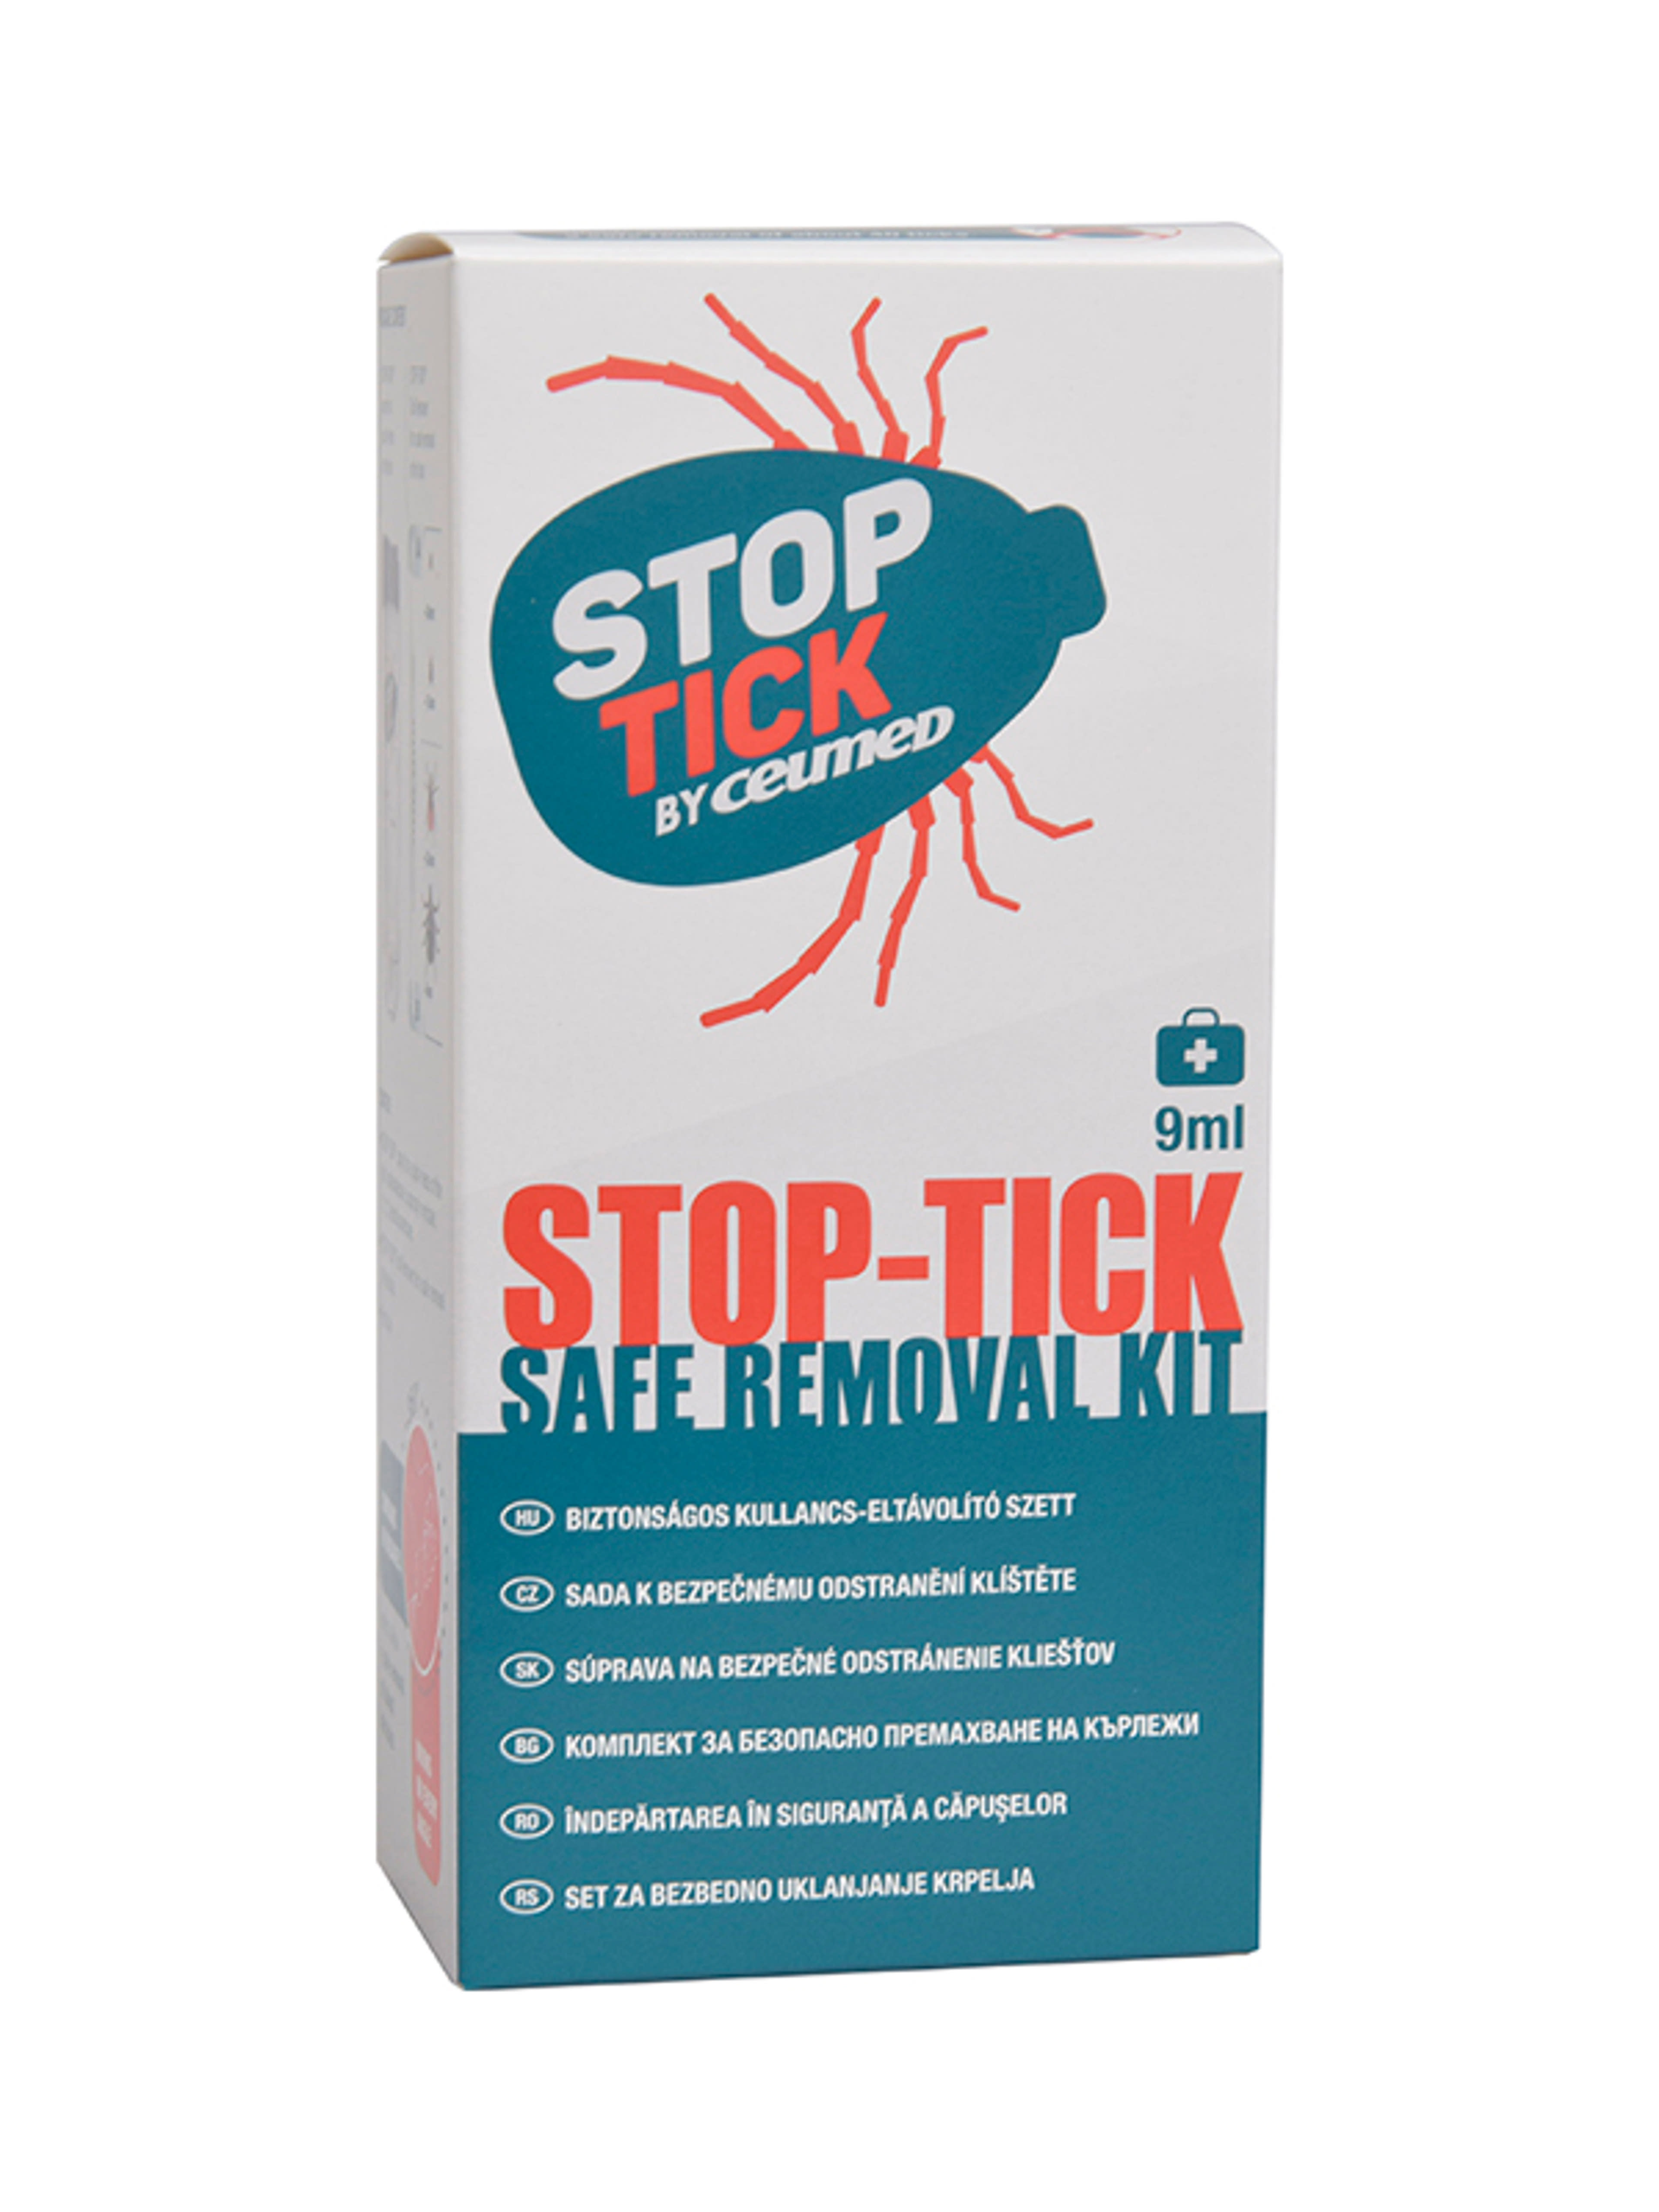 Stop-tick biztonságos kullancs-eltávolító szett - 9 ml